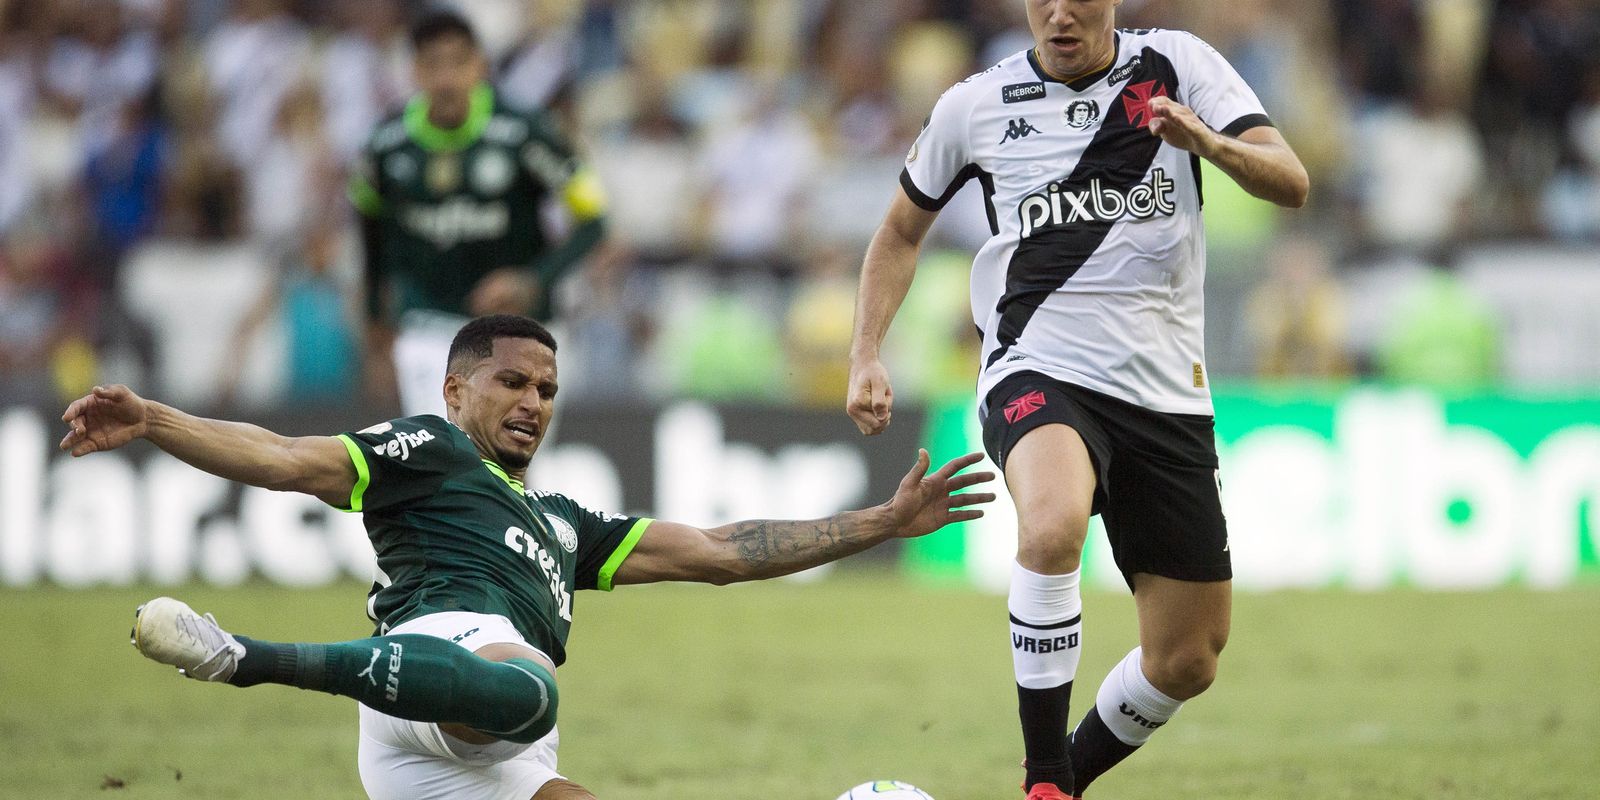 Flamengo derrota Vasco novamente e buscará o inédito